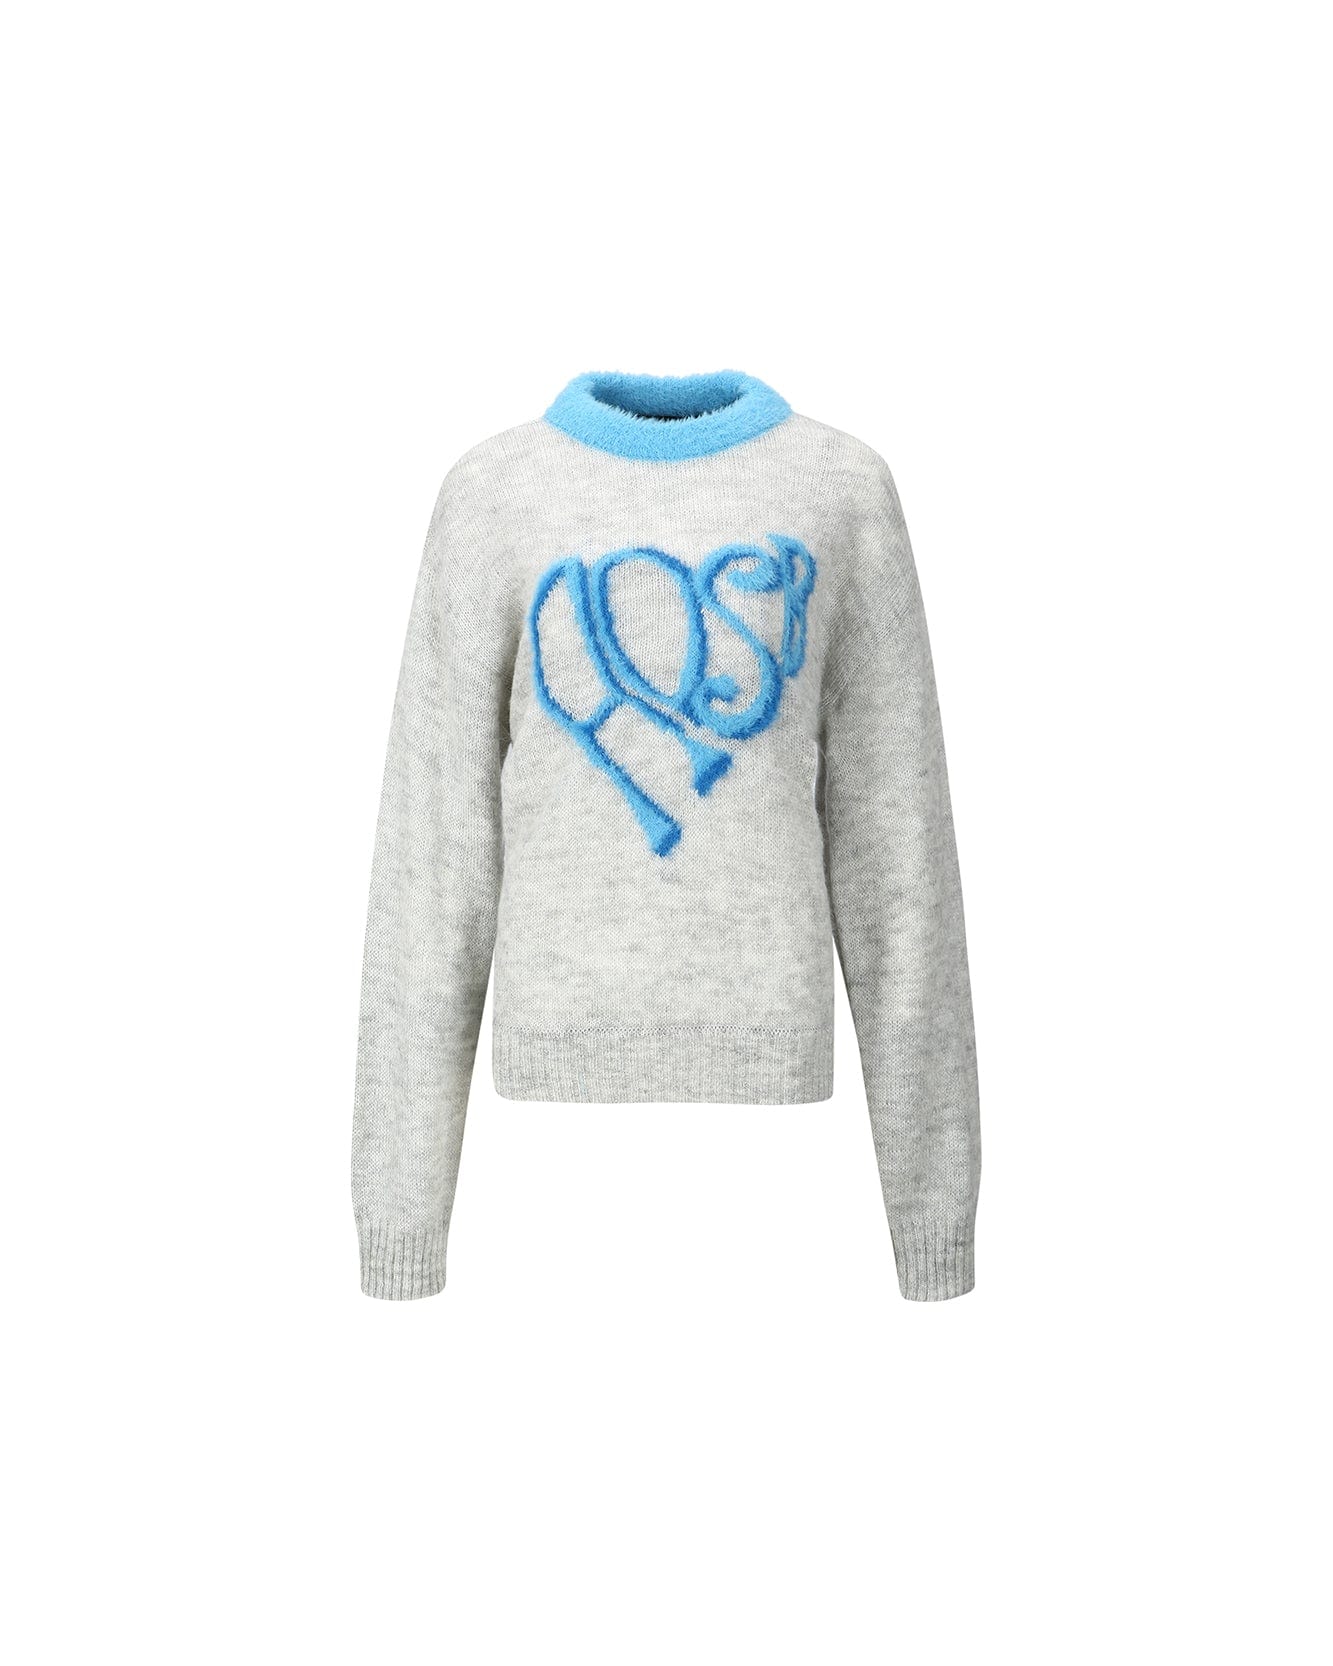 Louis Heart Sweater